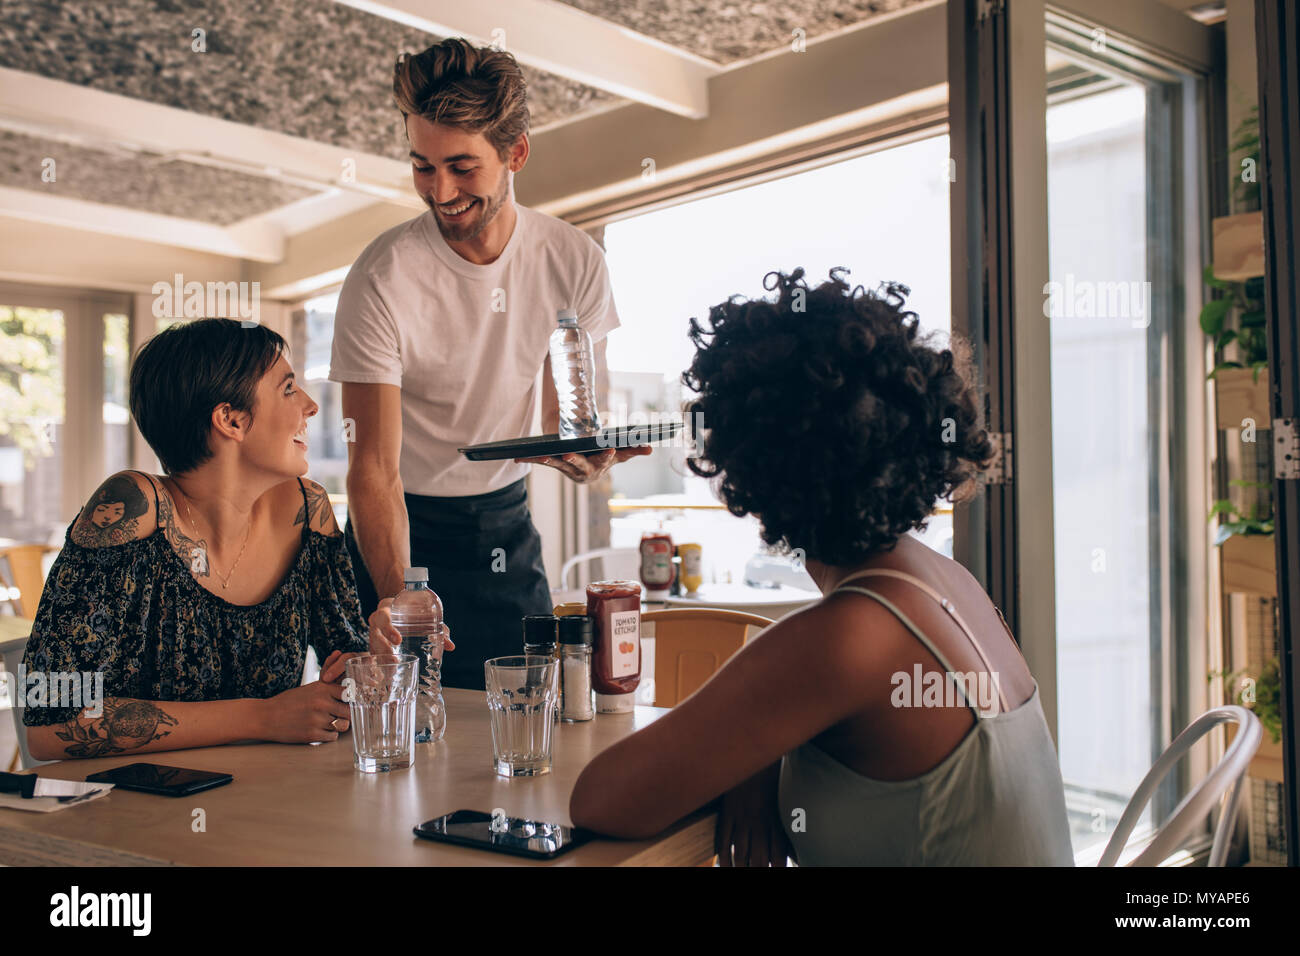 Cameriere maschio che serve acqua per donne presso il cafe. Amici di sesso femminile in un ristorante con cameriere che serve l'acqua. Foto Stock